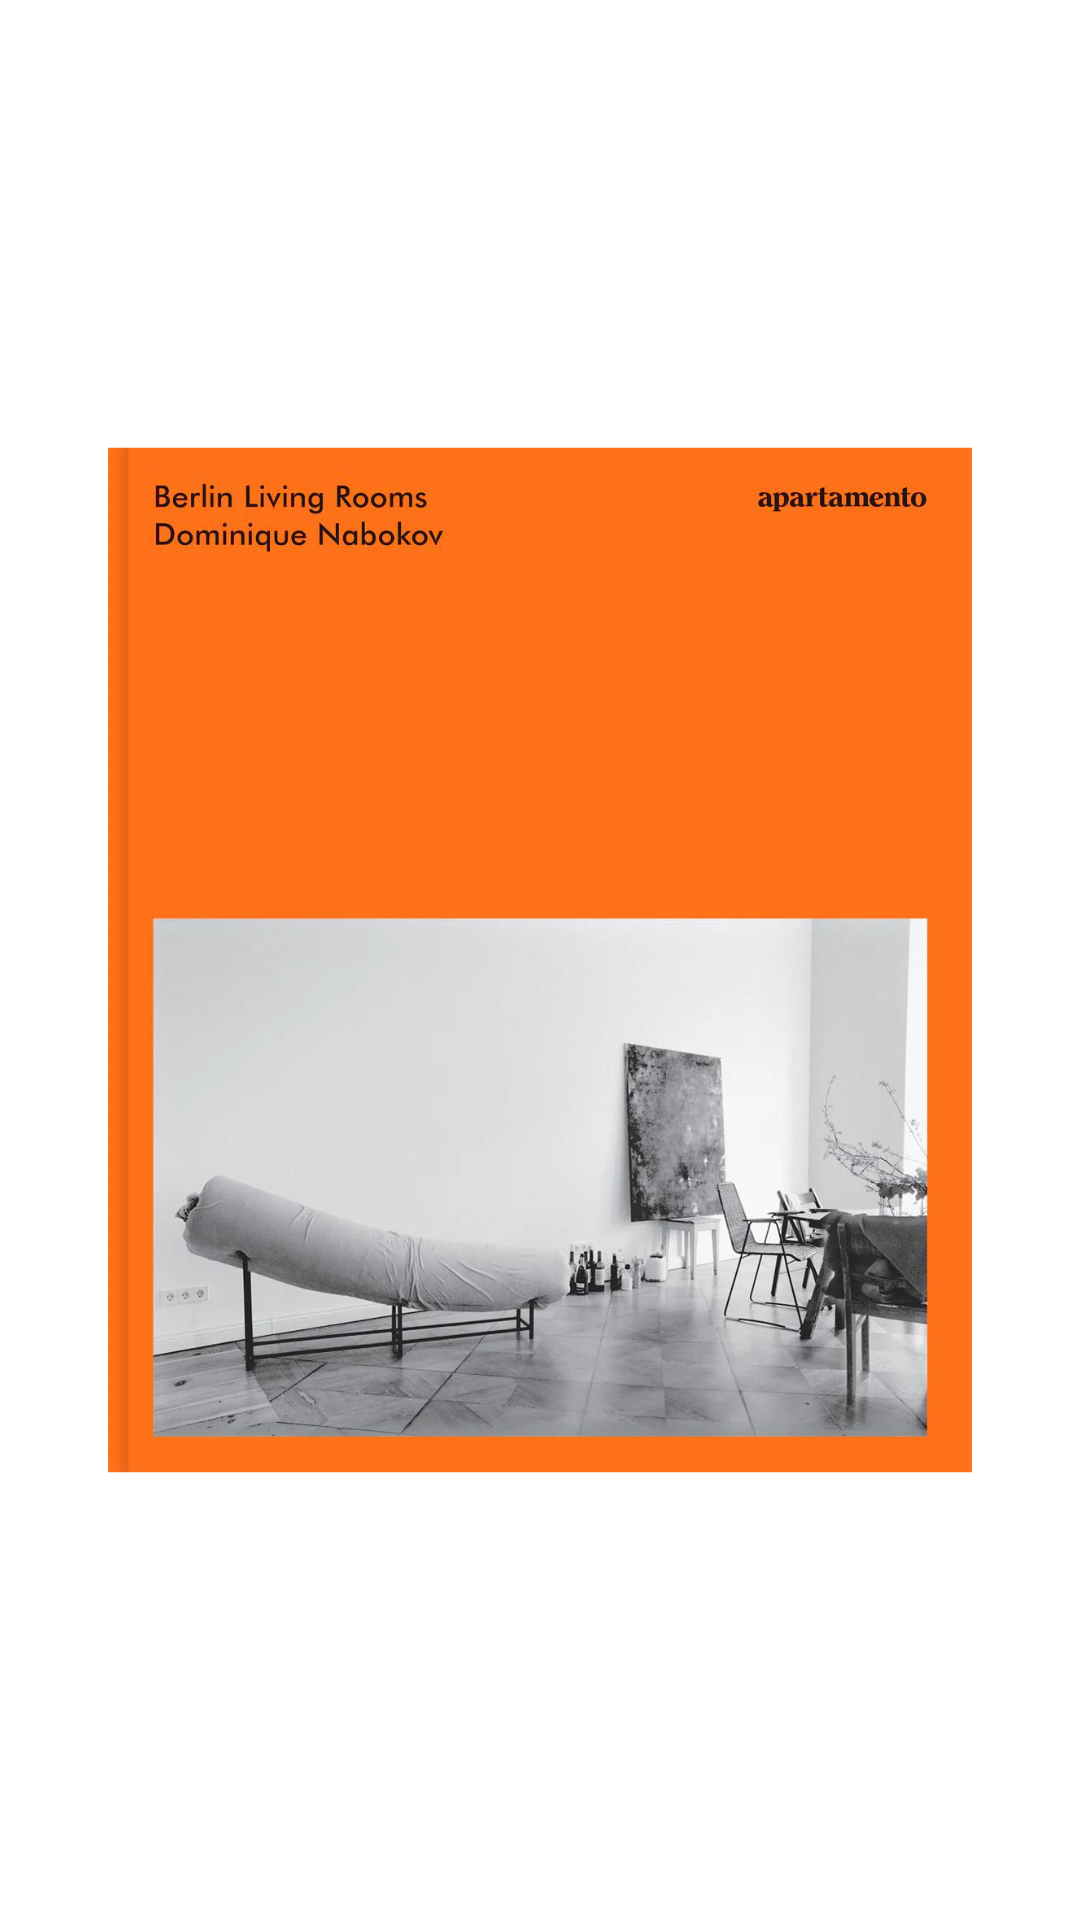 Dominique Nabokov: Berlin Living Rooms by Apartamento